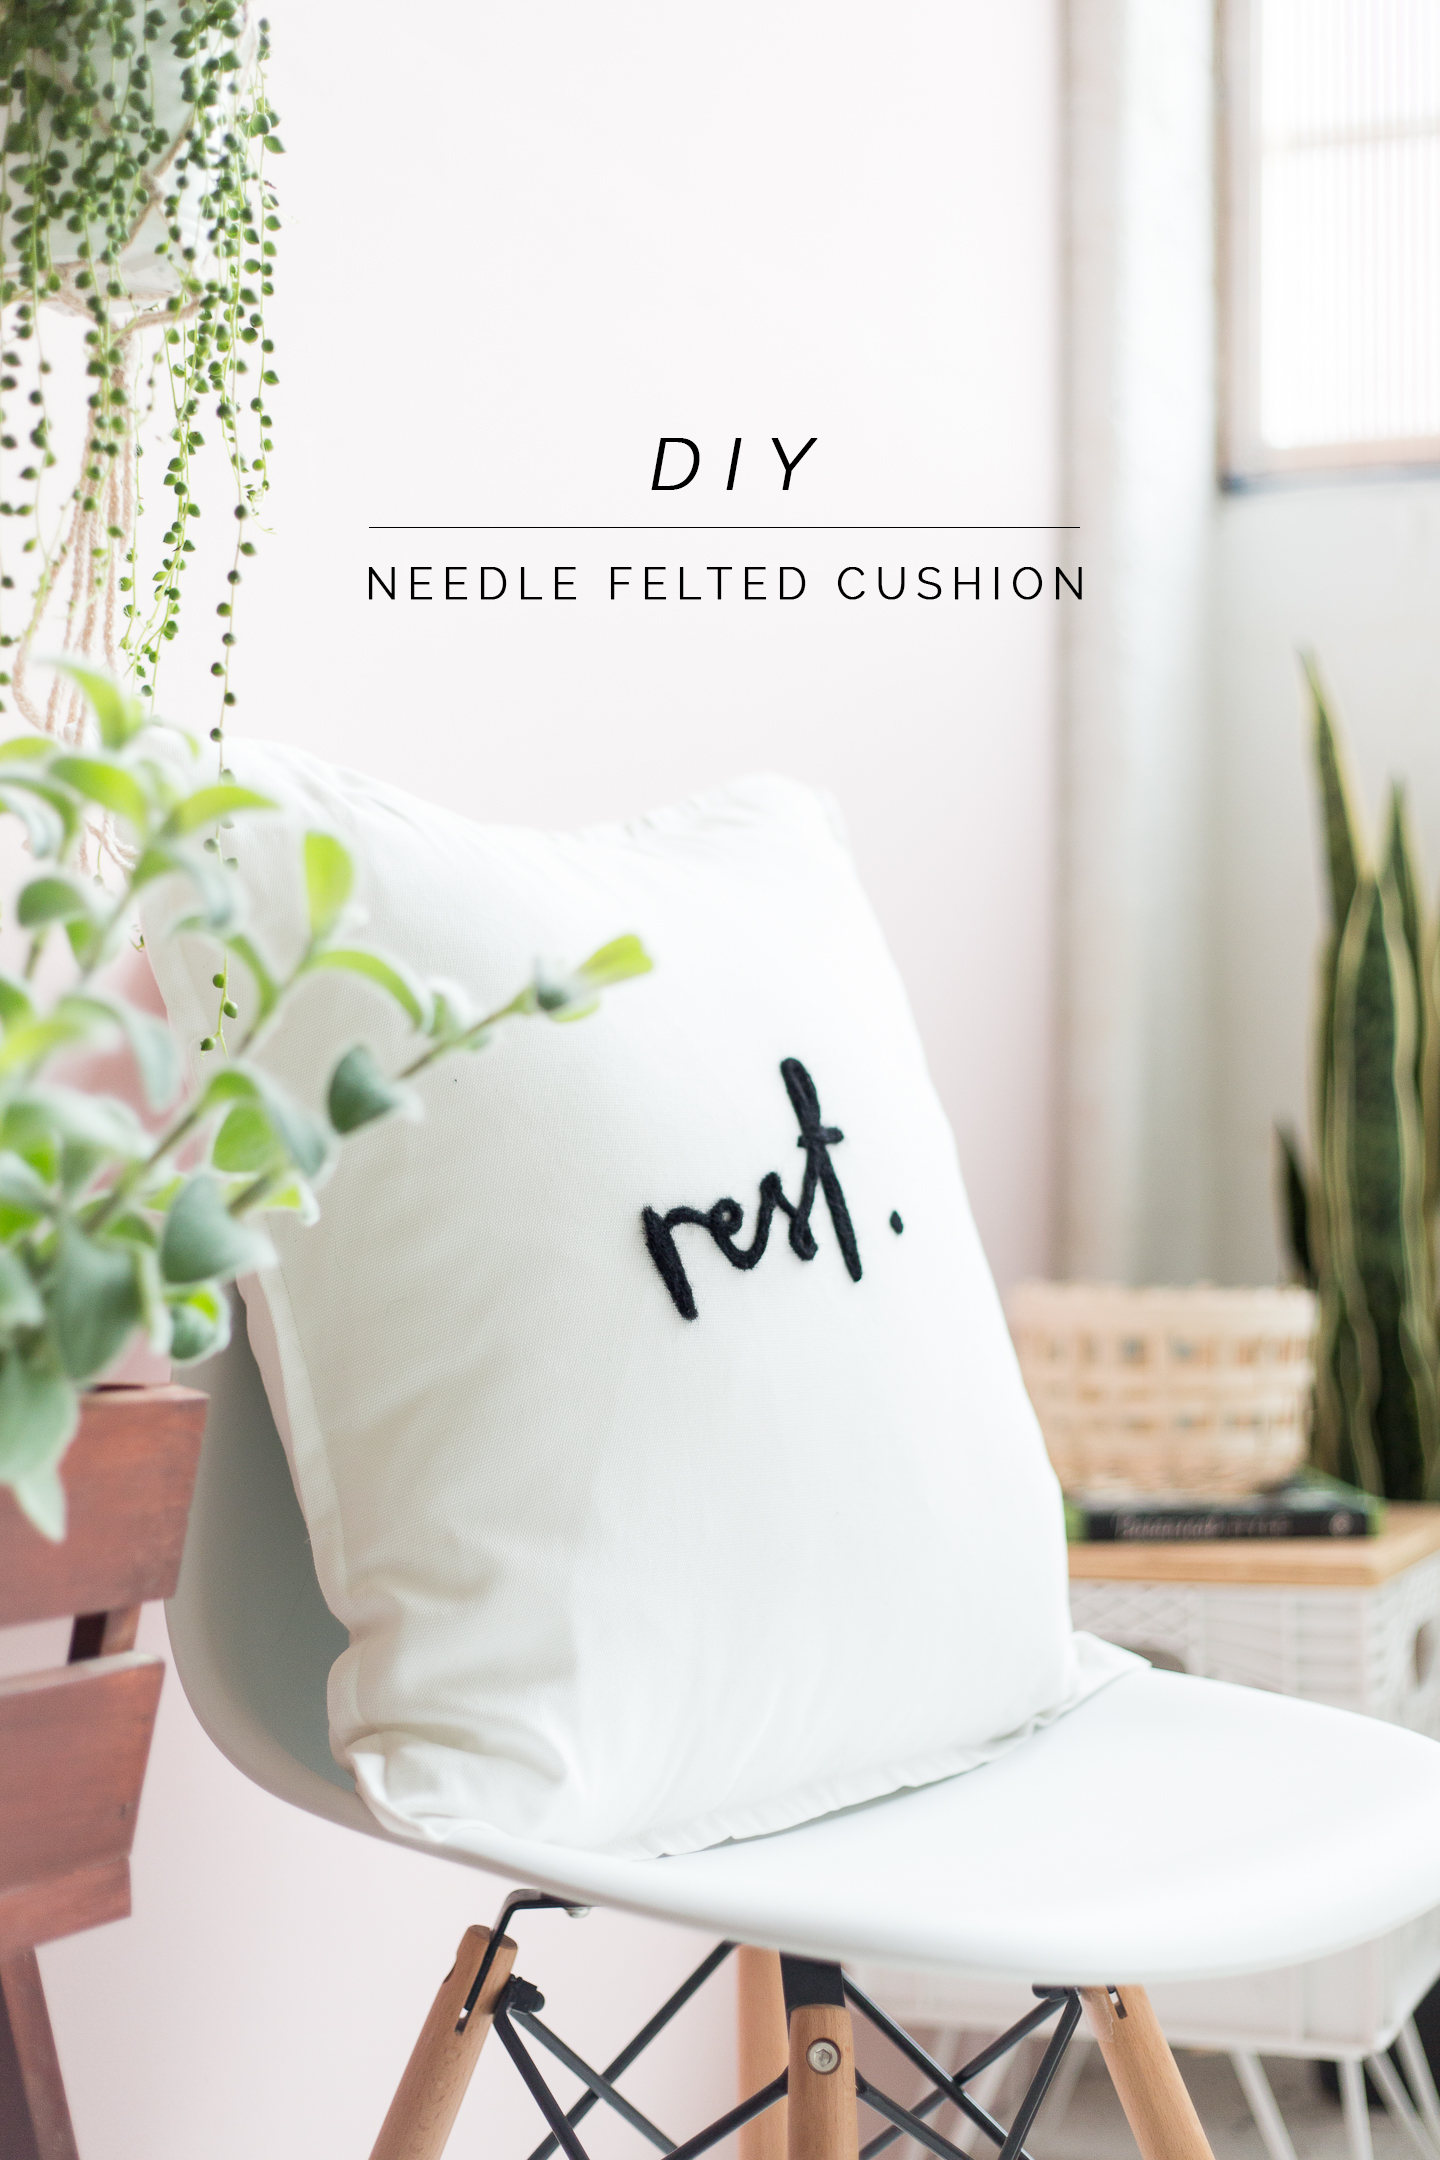 diy-needle-felted-lettering-cushion-tutorial-_-fallfordiy